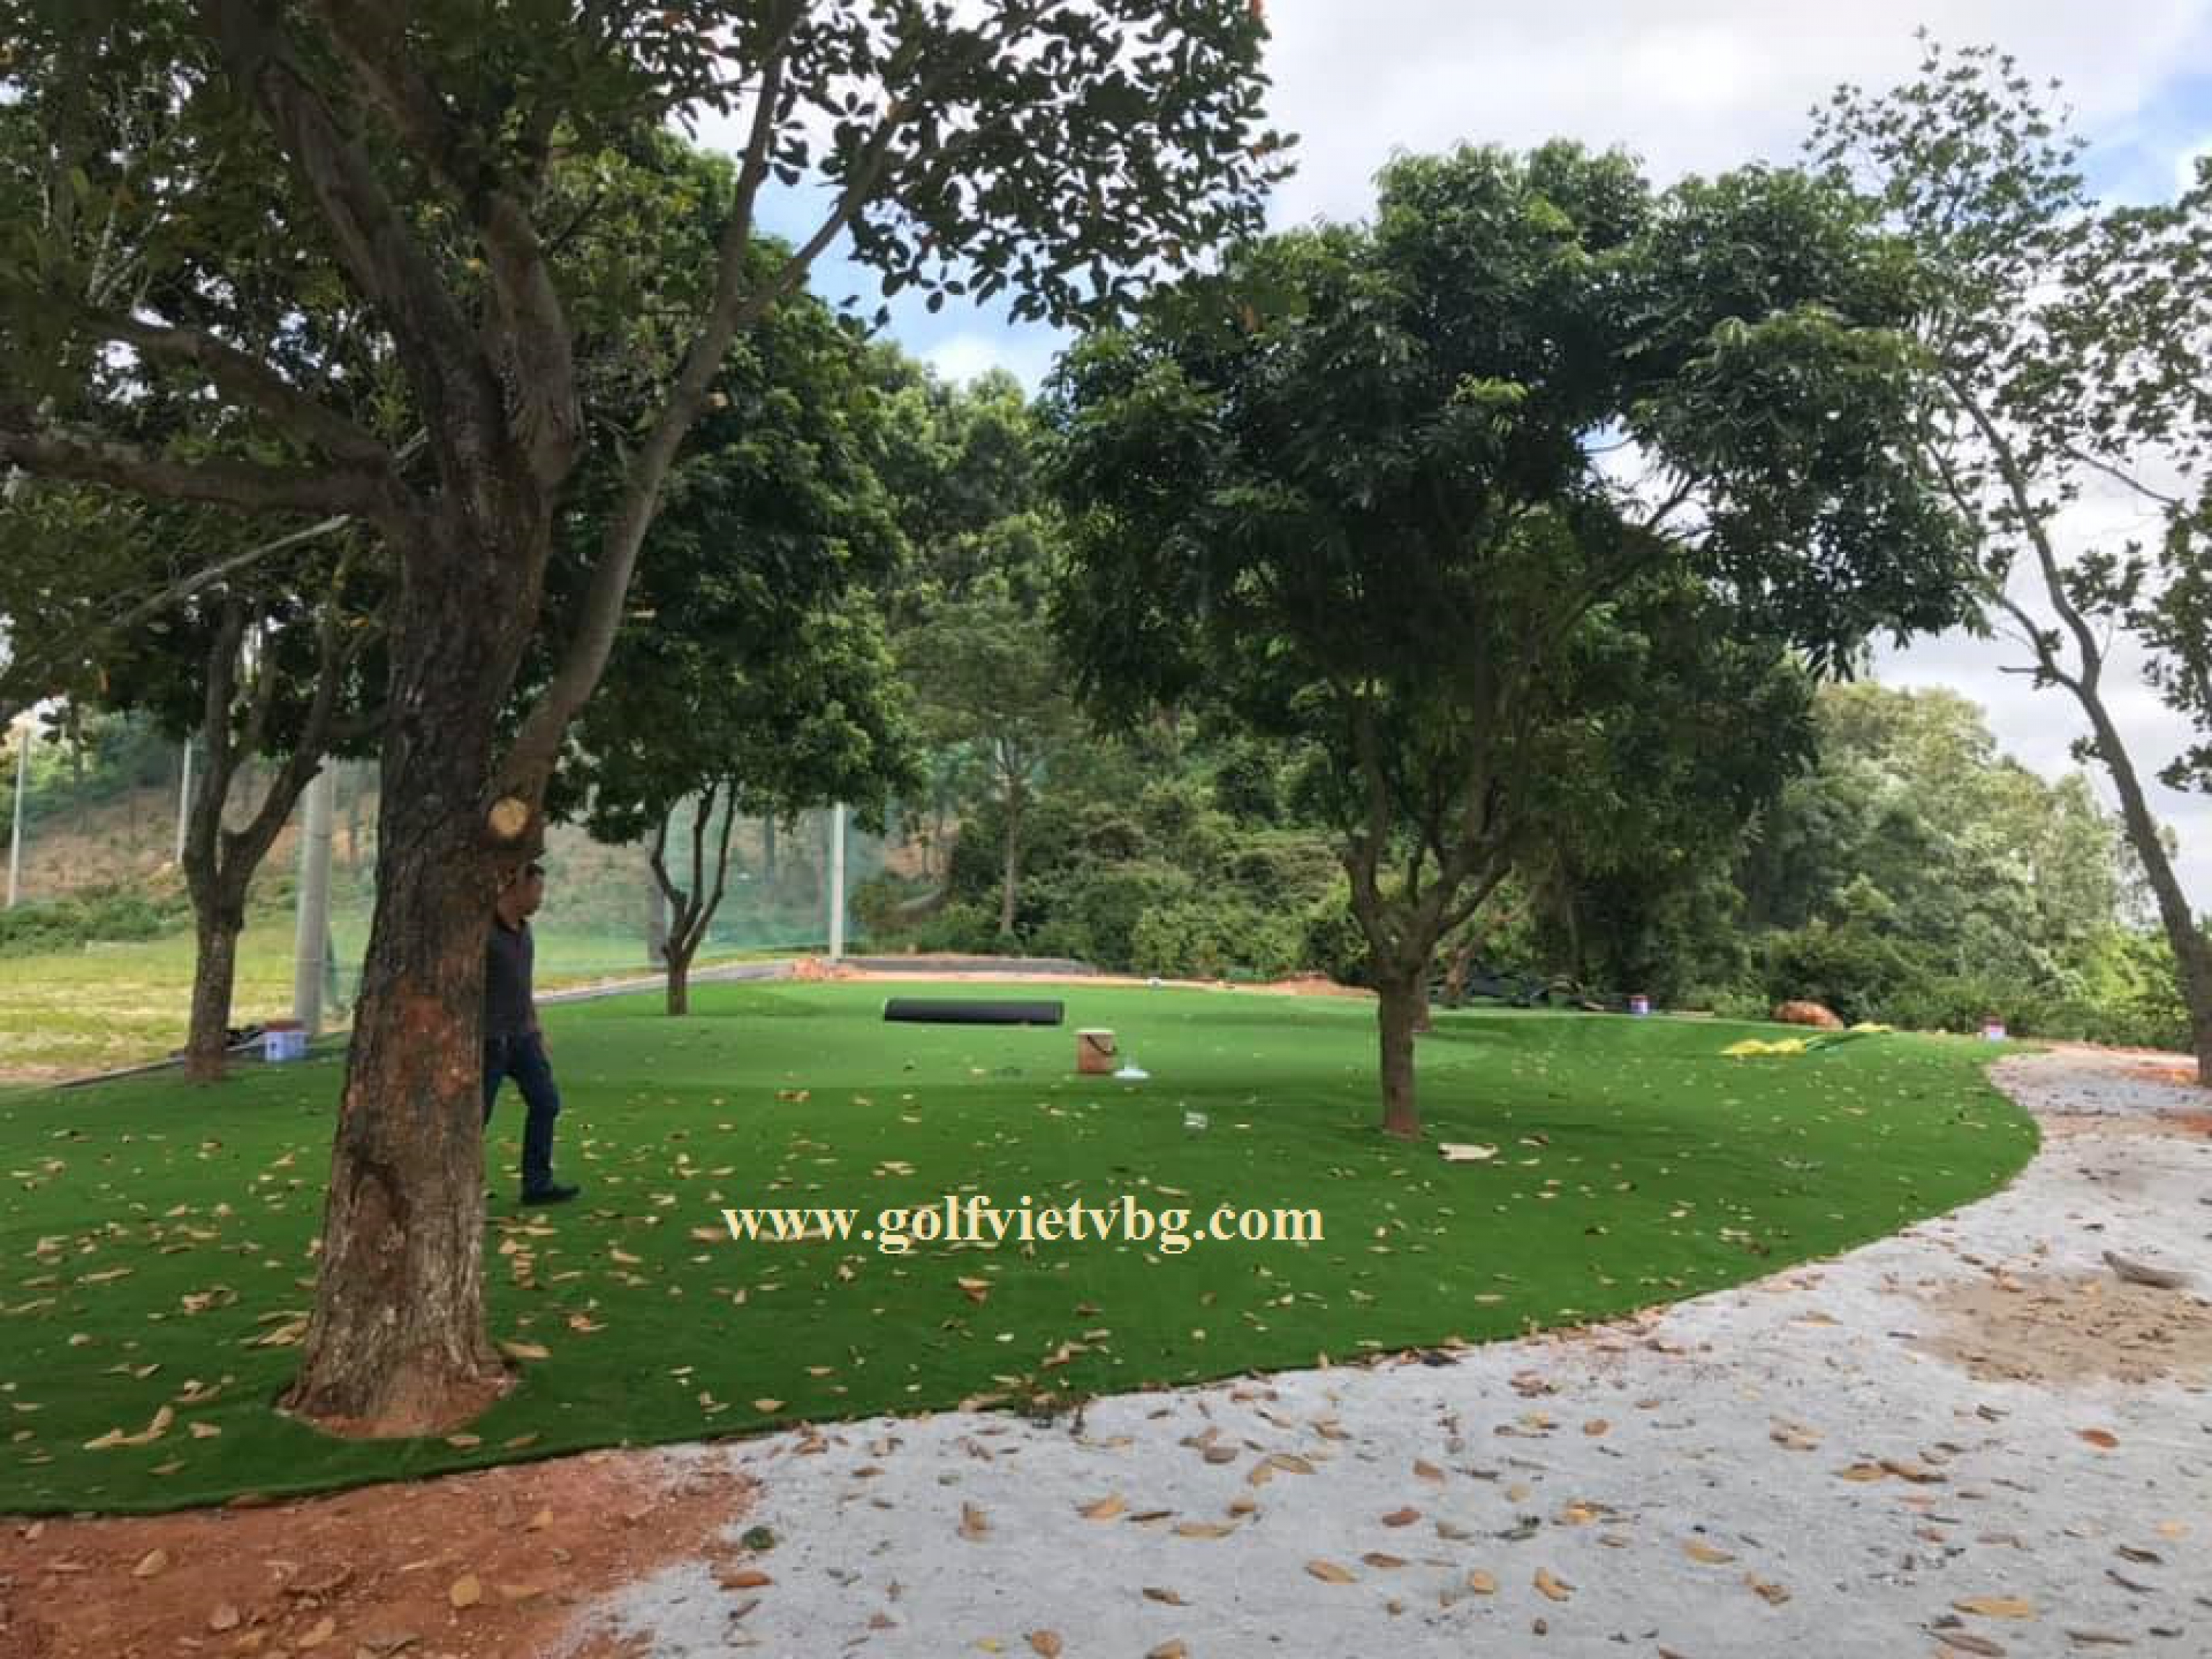 Cung cấp thi công sân tập golf kèm sân green tại QK3 Hải Phòng